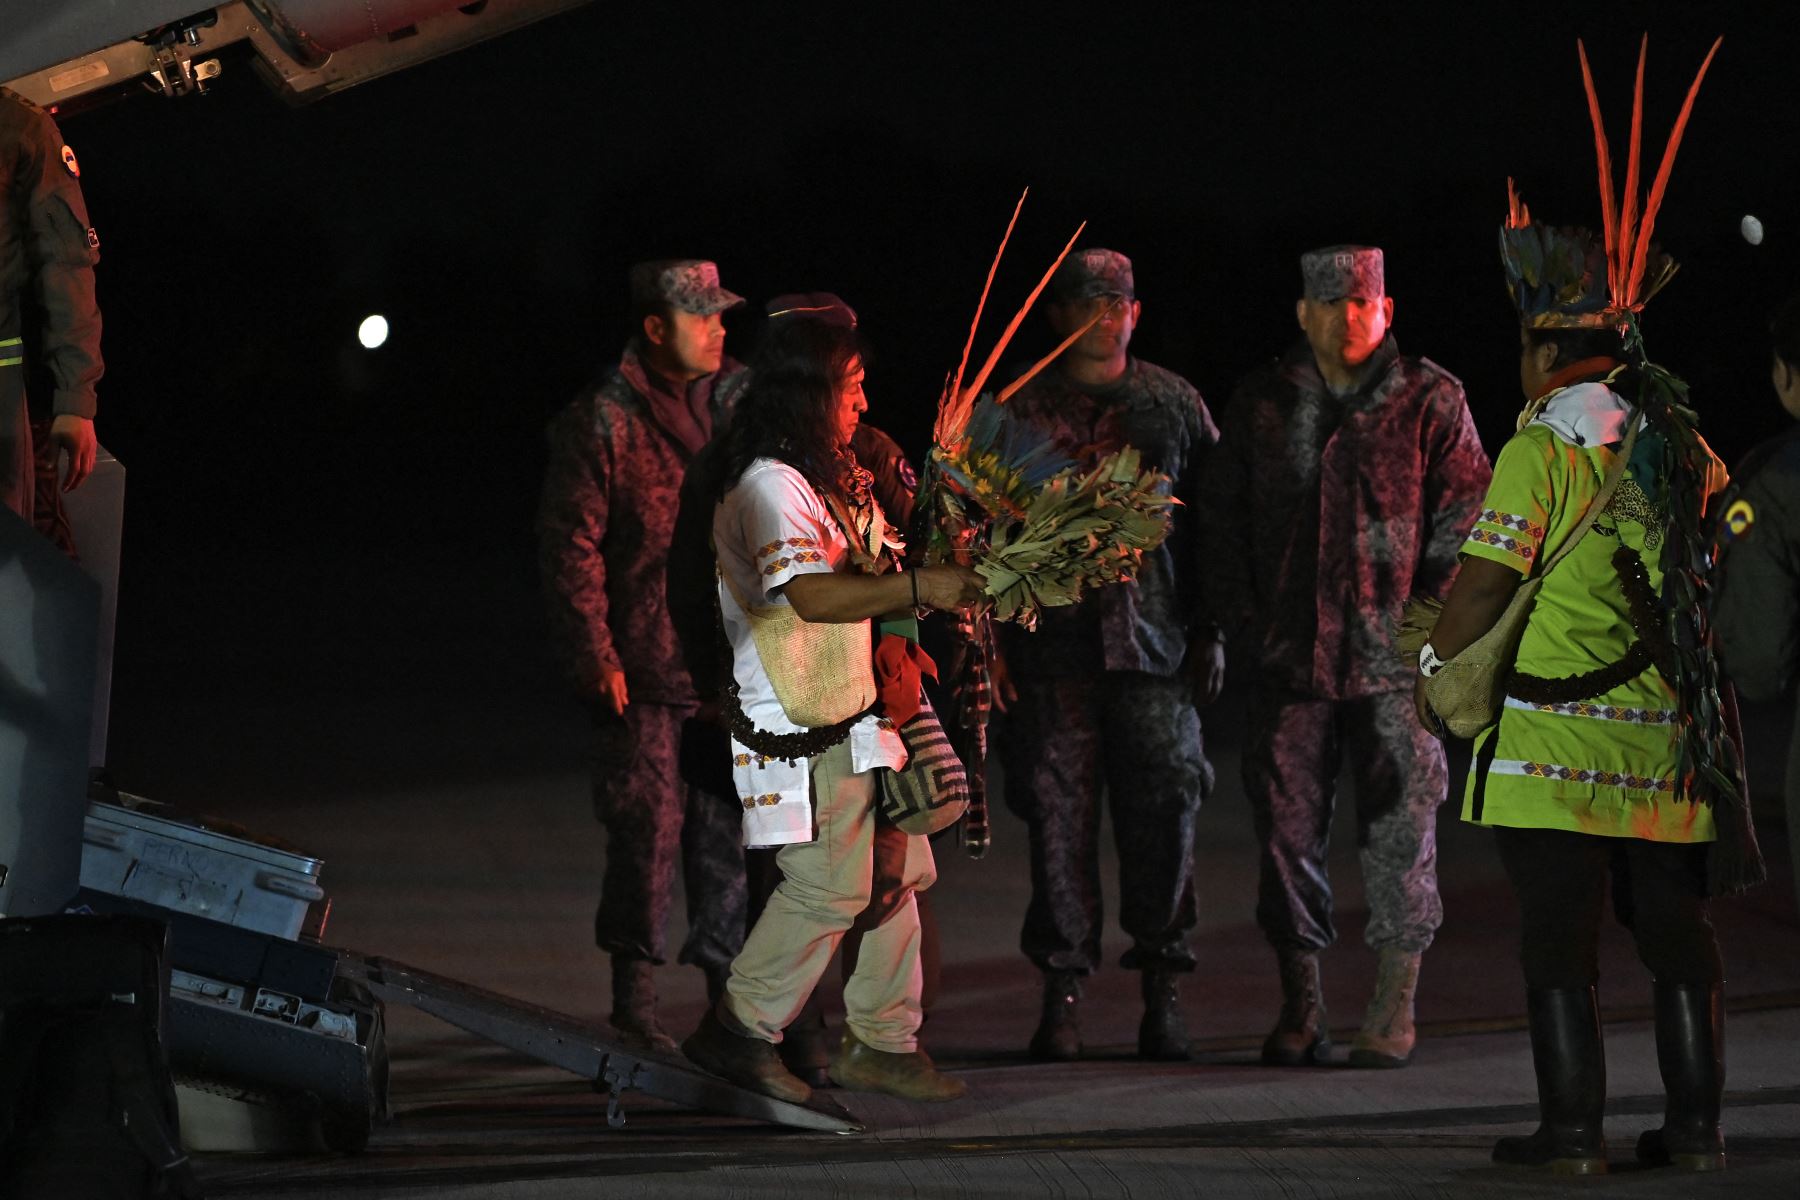 Un indígena que participó con los militares en la búsqueda de los cuatro niños indígenas que fueron encontrados con vida después de estar perdidos durante 40 días en la selva amazónica colombiana luego de un accidente aéreo.
Foto: AFP